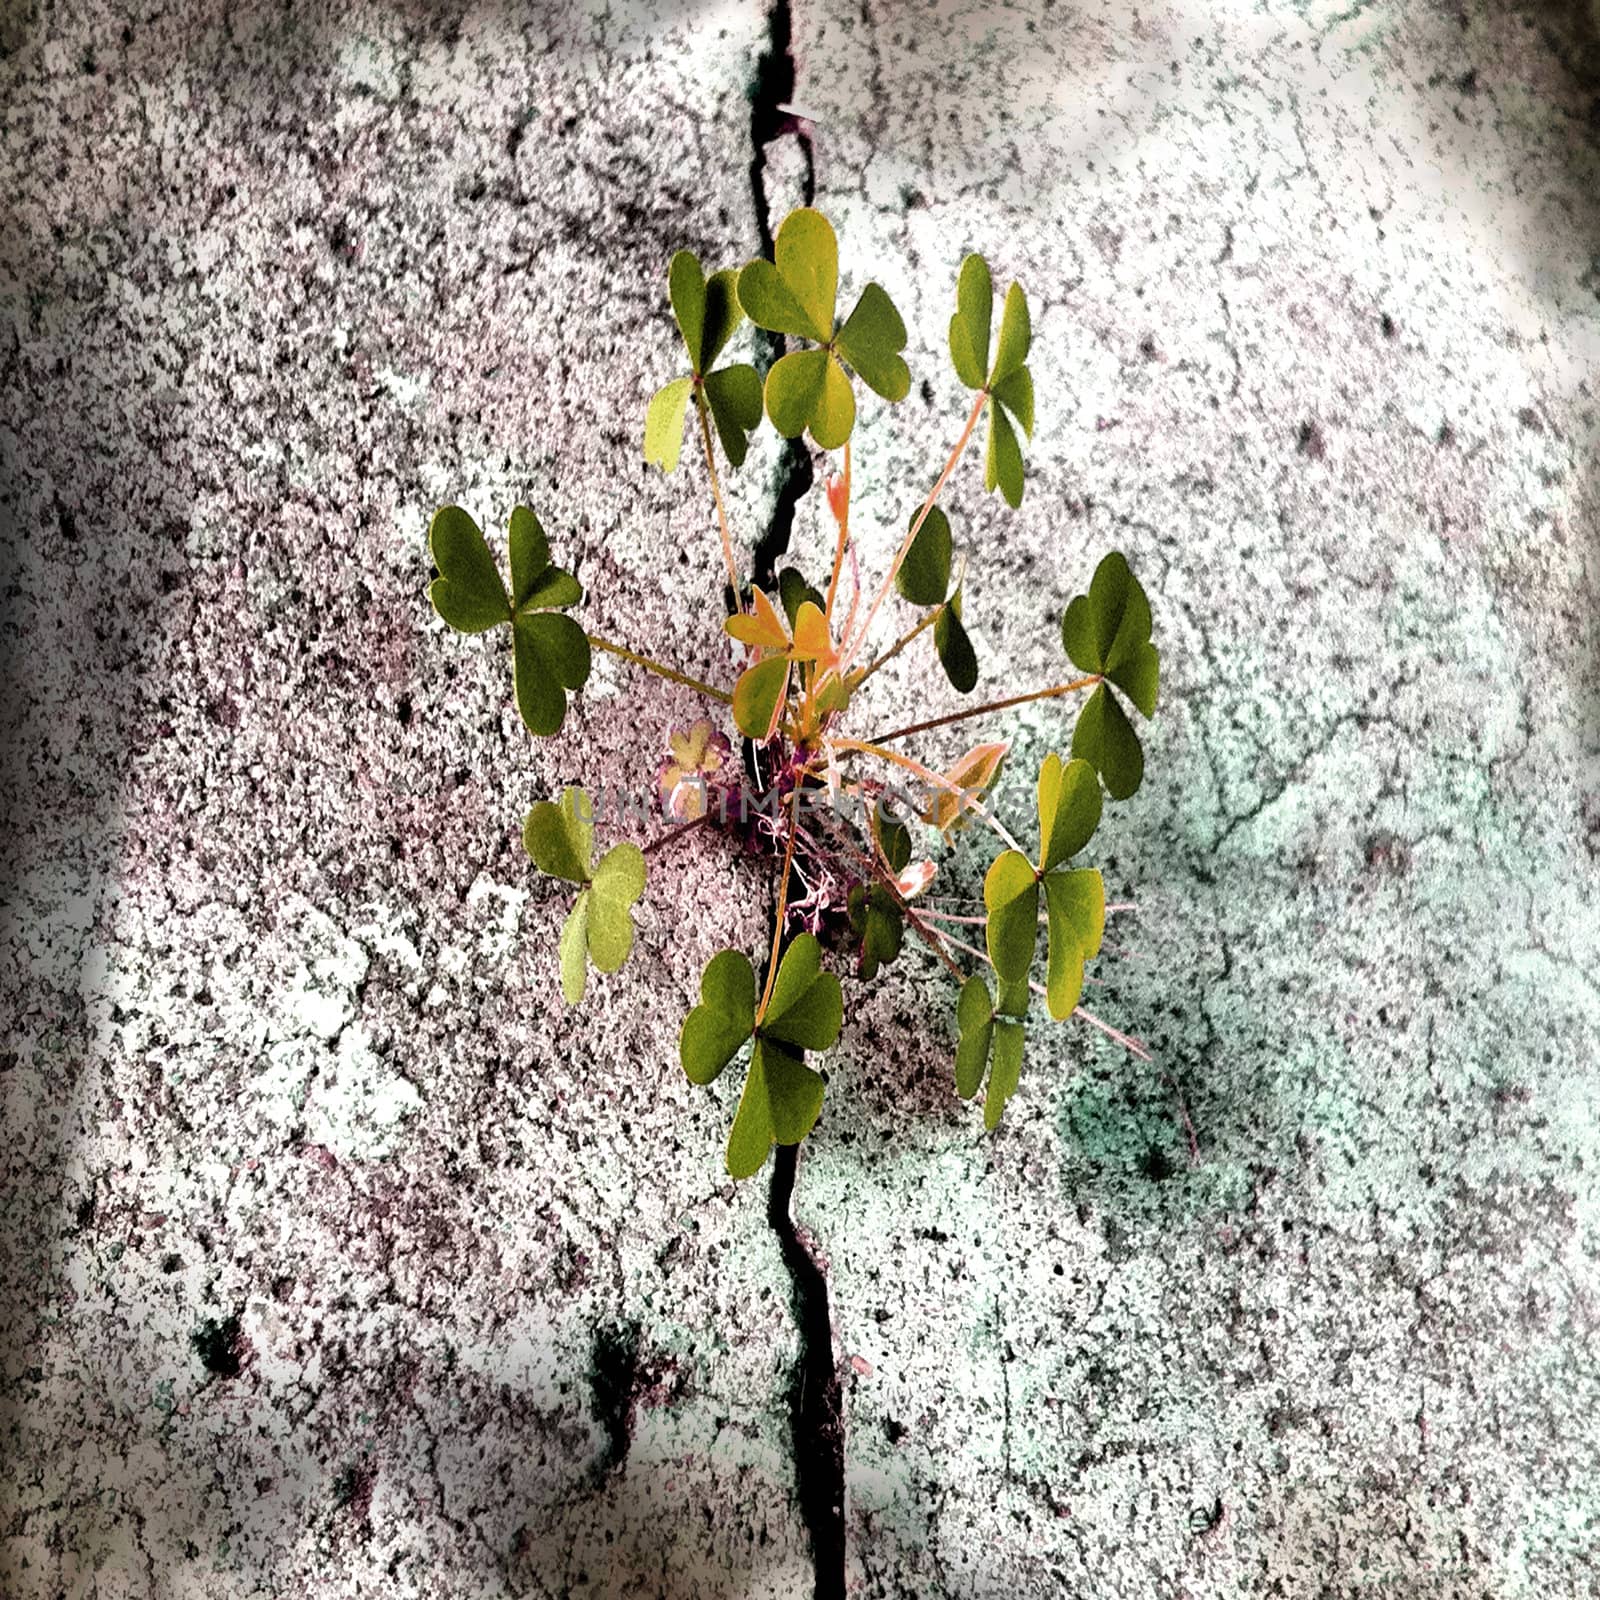 clover breaking through concrete